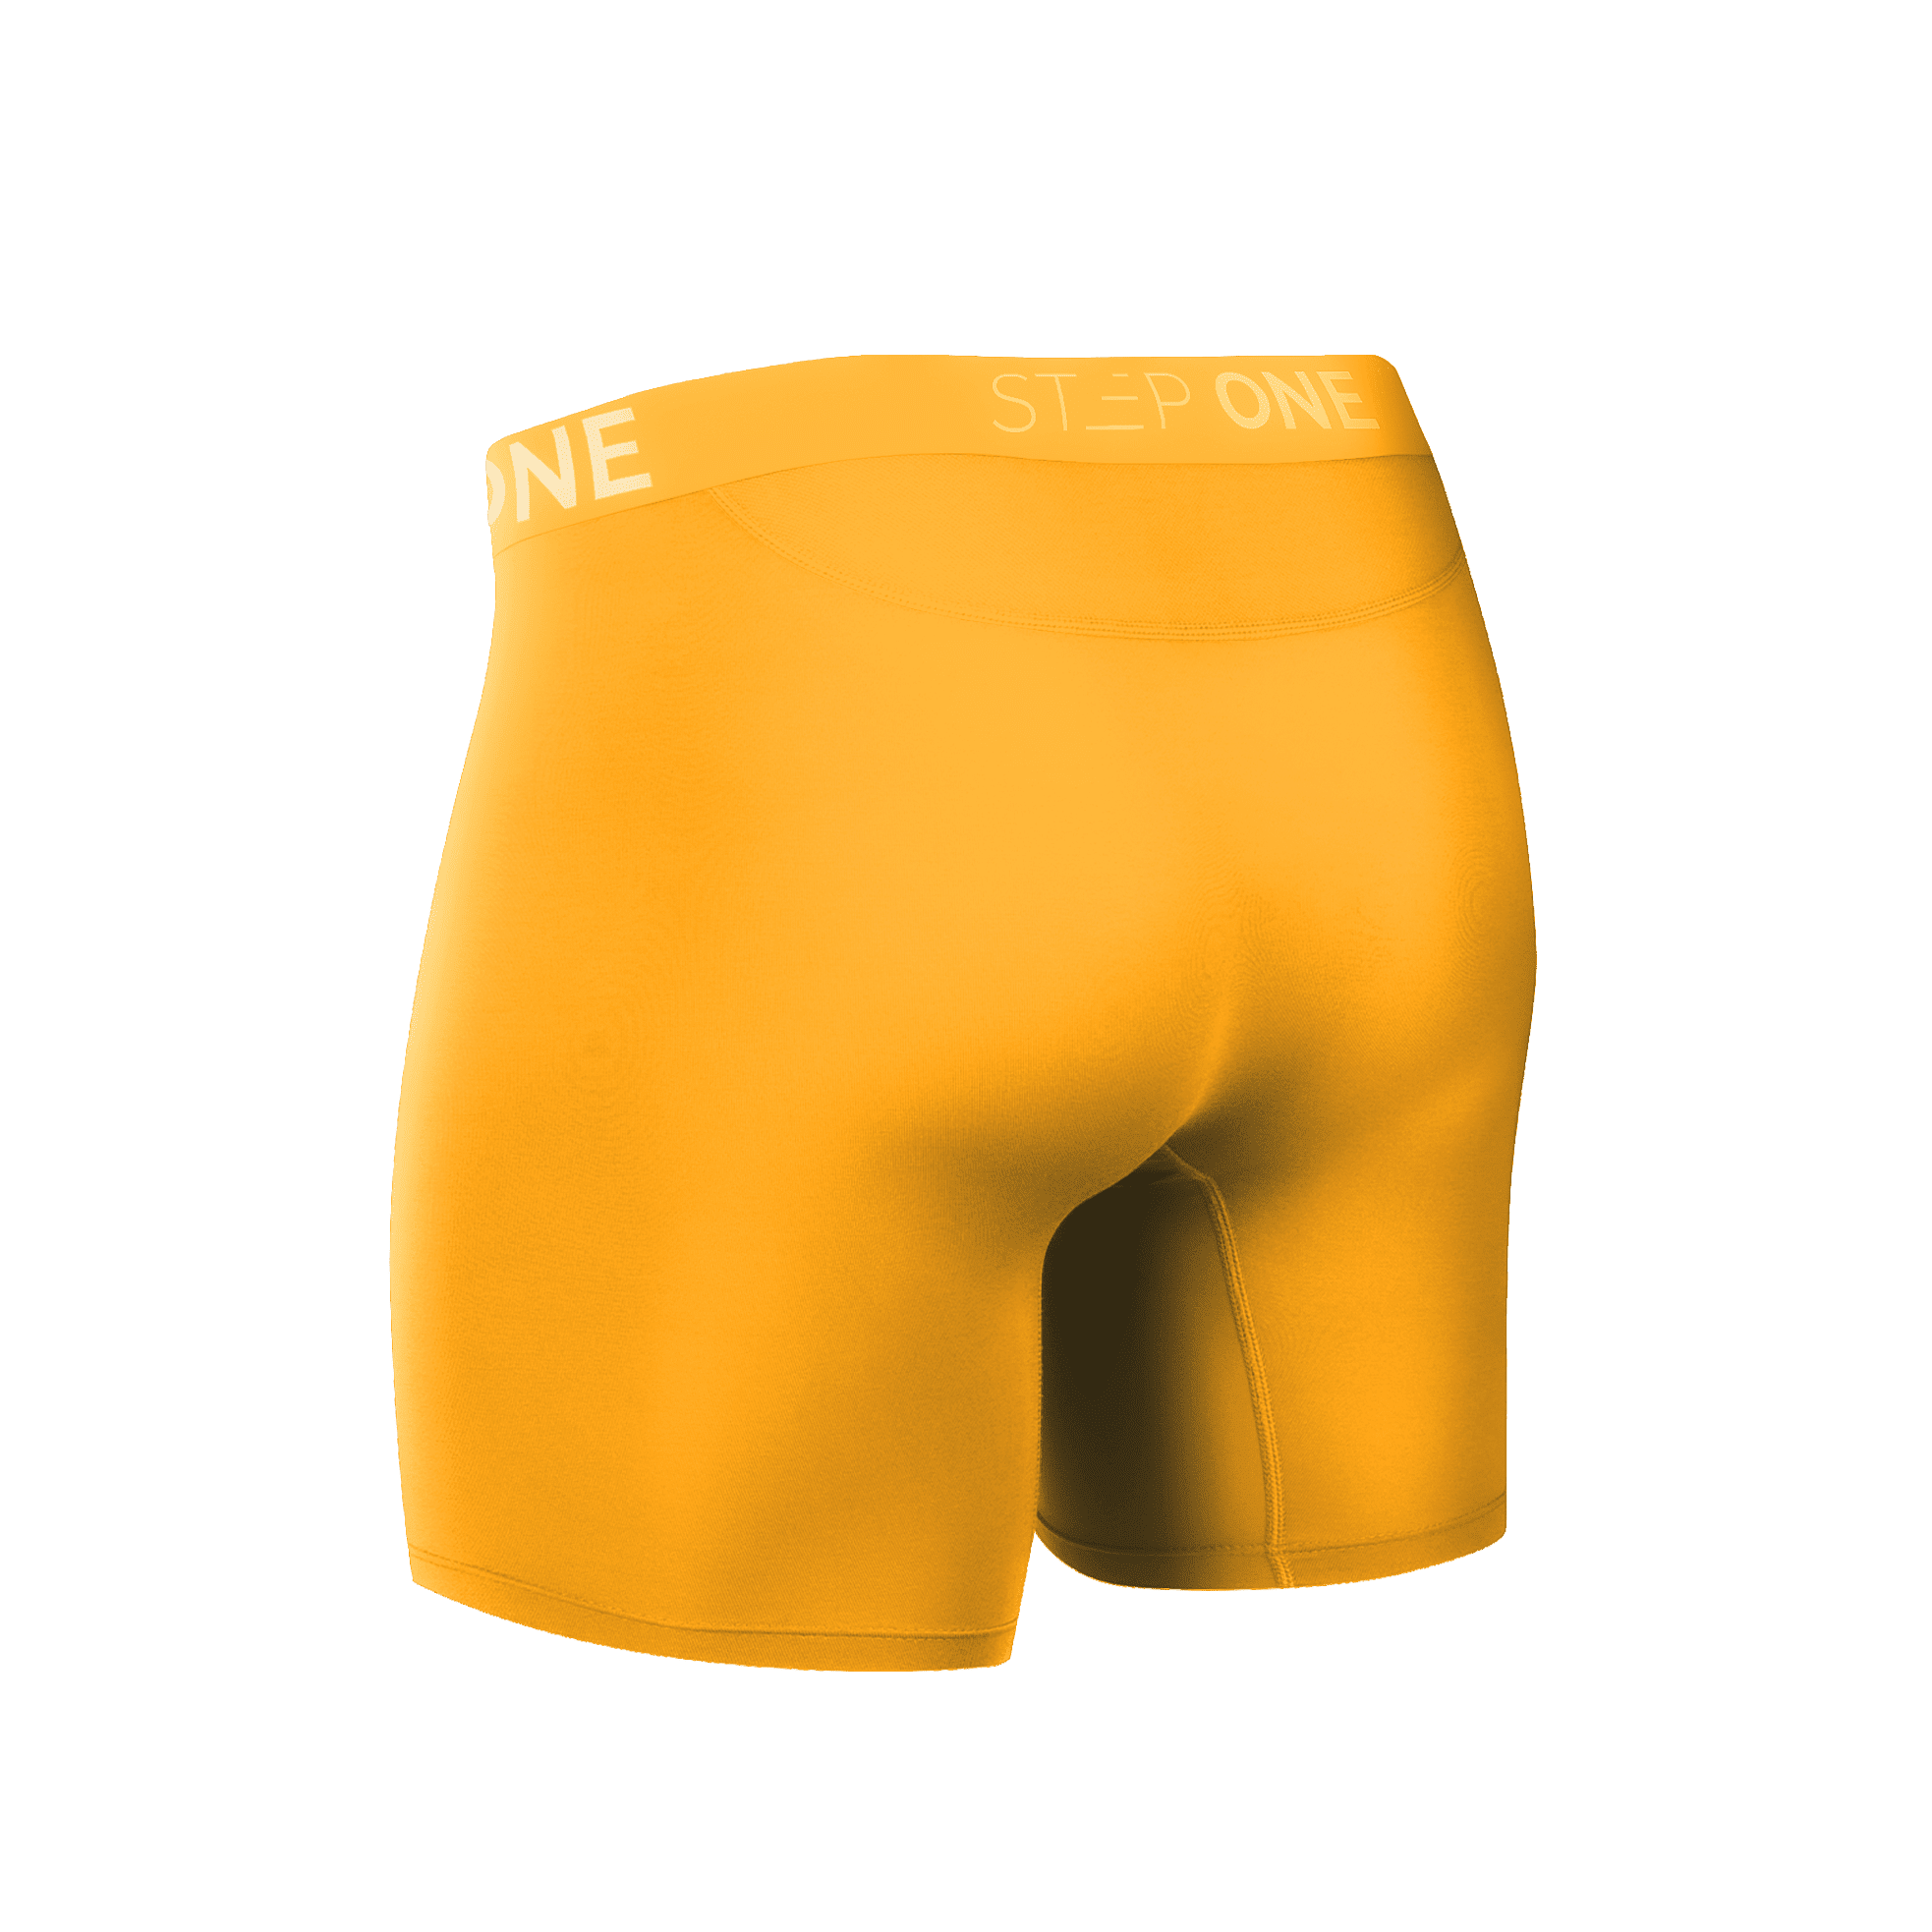 Boxer Brief Fly - Egg Yolks | Step One Men's Underwear